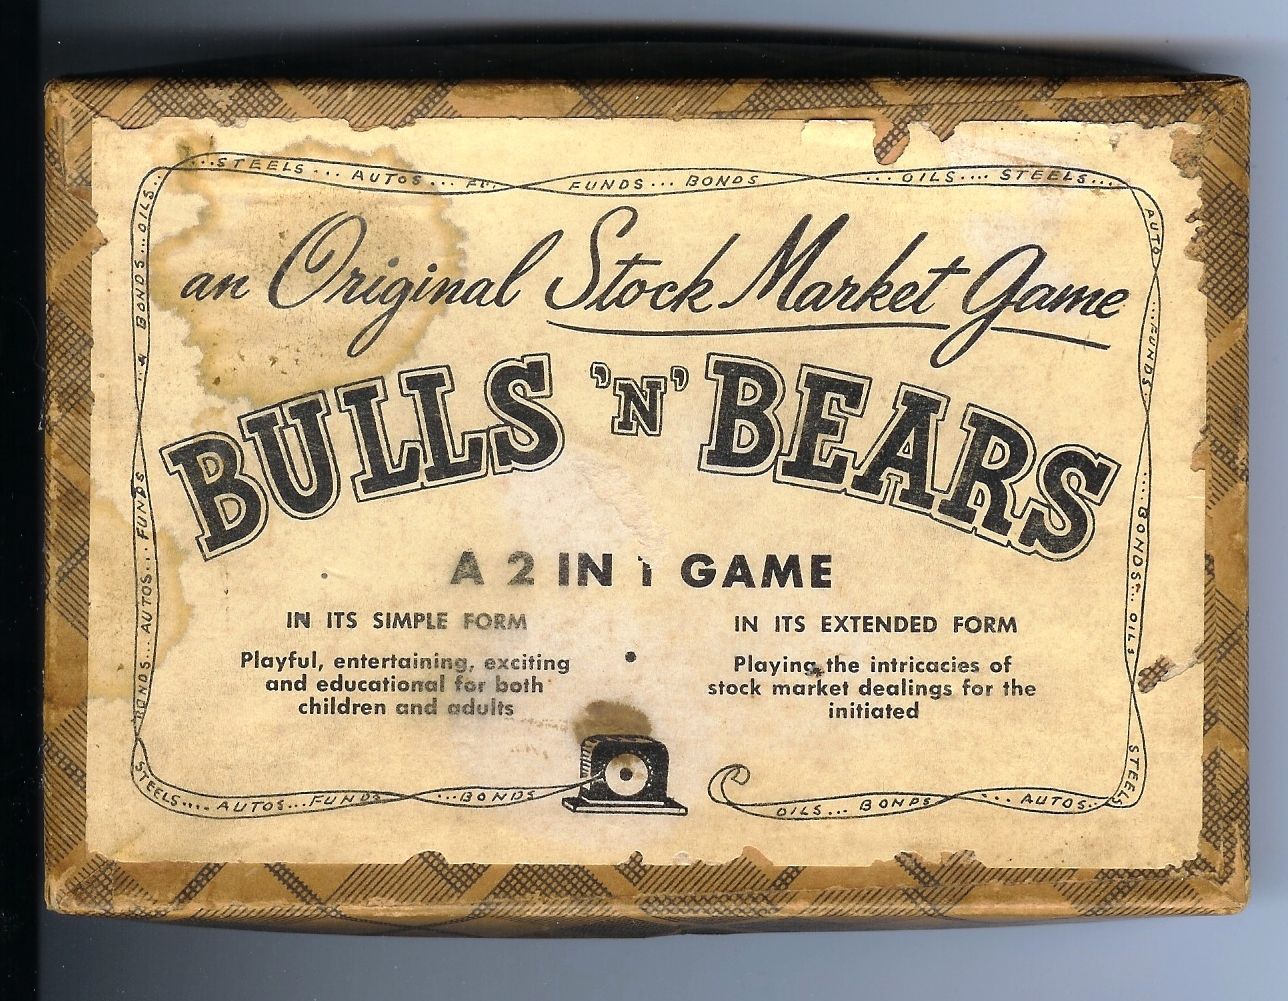 Bulls 'N' Bears